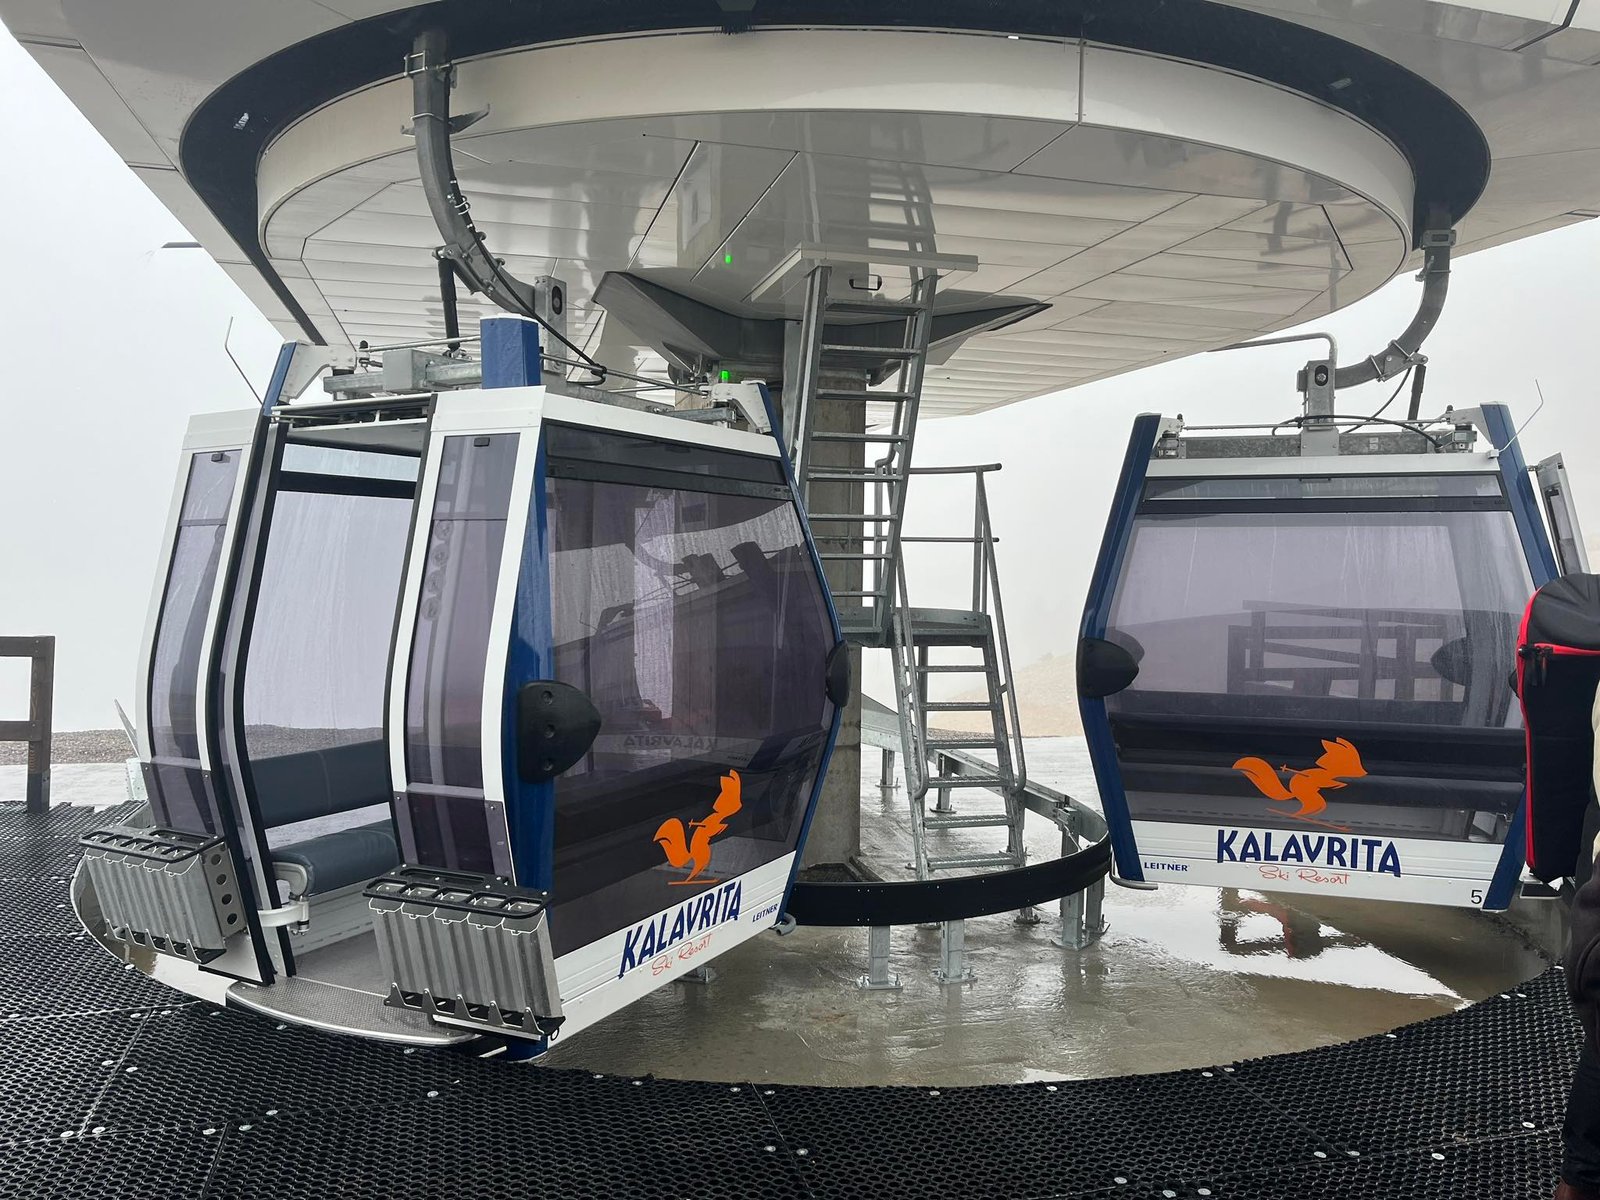 Χιονοδρομικό Κέντρο Καλαβρύτων: Πρεμιέρα για το νέο “Αχιλλέα” – Ένα εντυπωσιακό έργο με εξοπλισμό τελευταίας τεχνολογίας